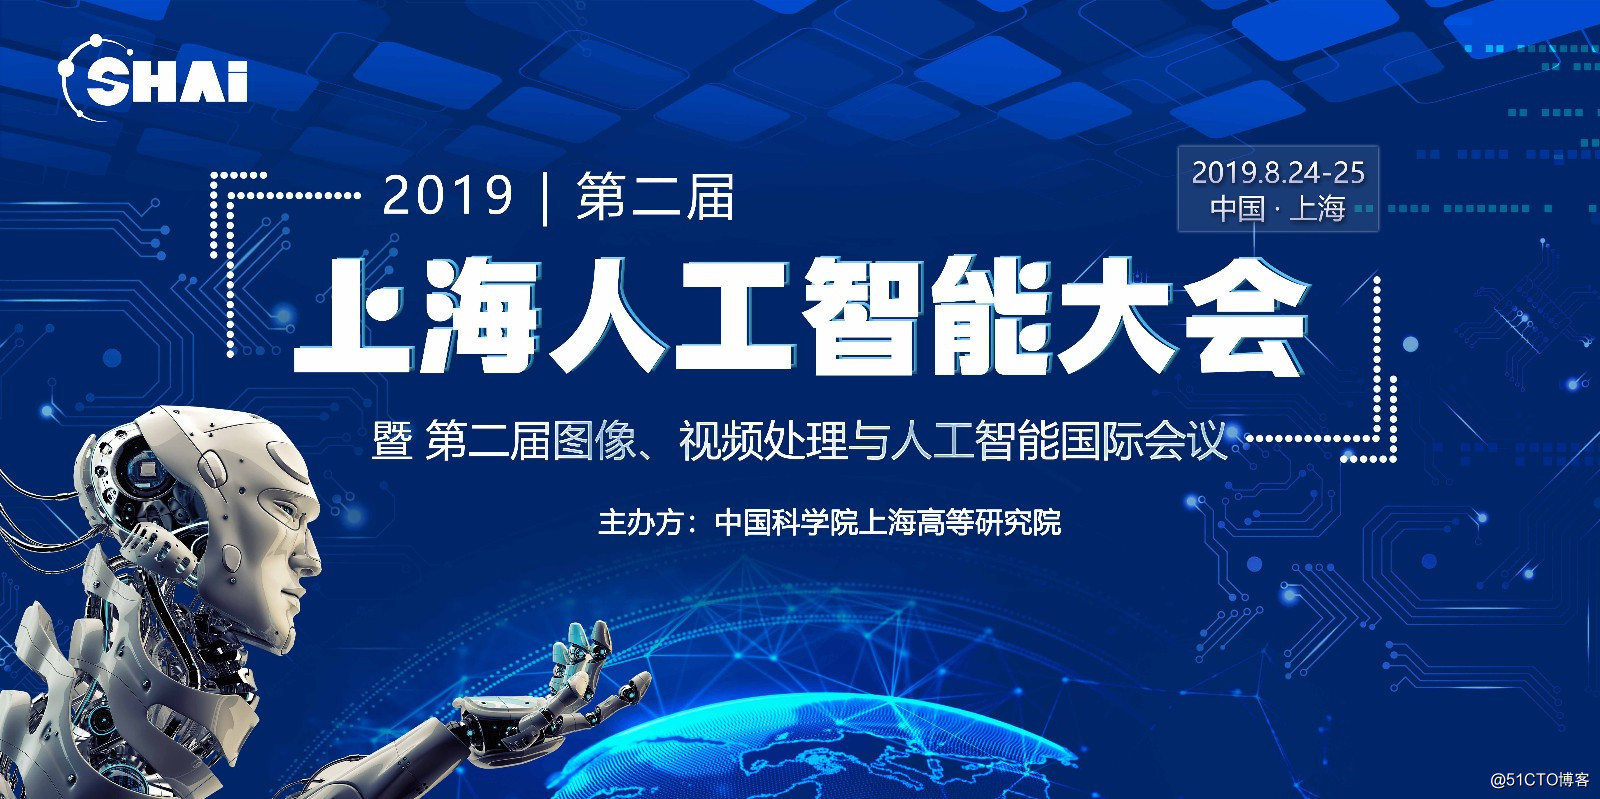 第二届上海人工智能大会 IVPAI2019